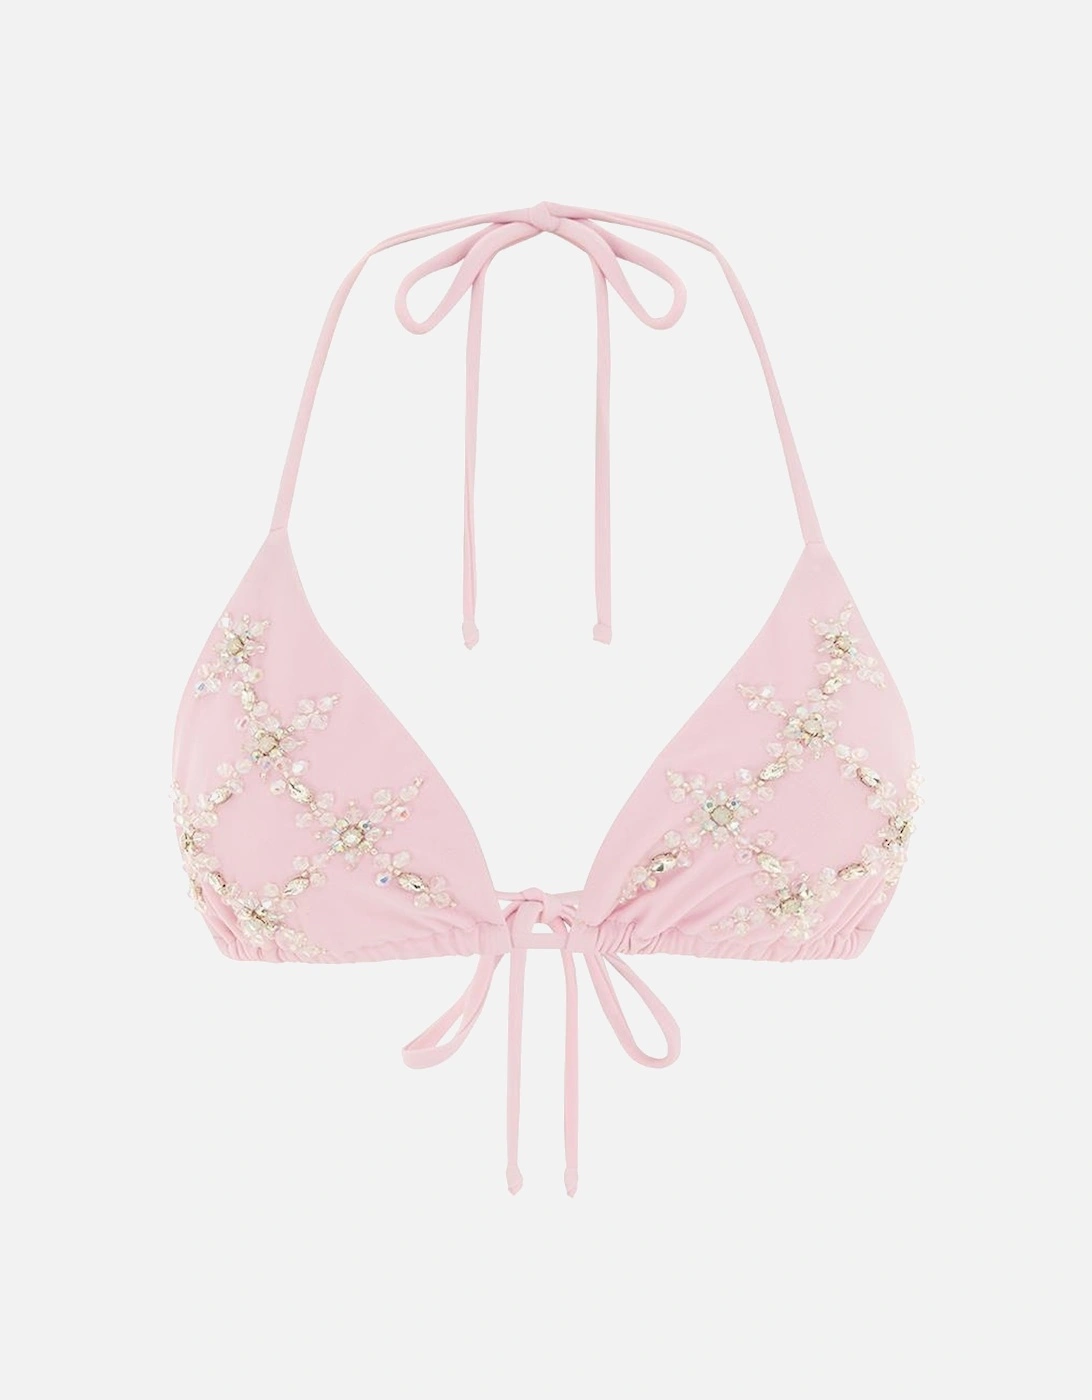 Rose Luxe Self-Tie Pink Bikini Top, 4 of 3